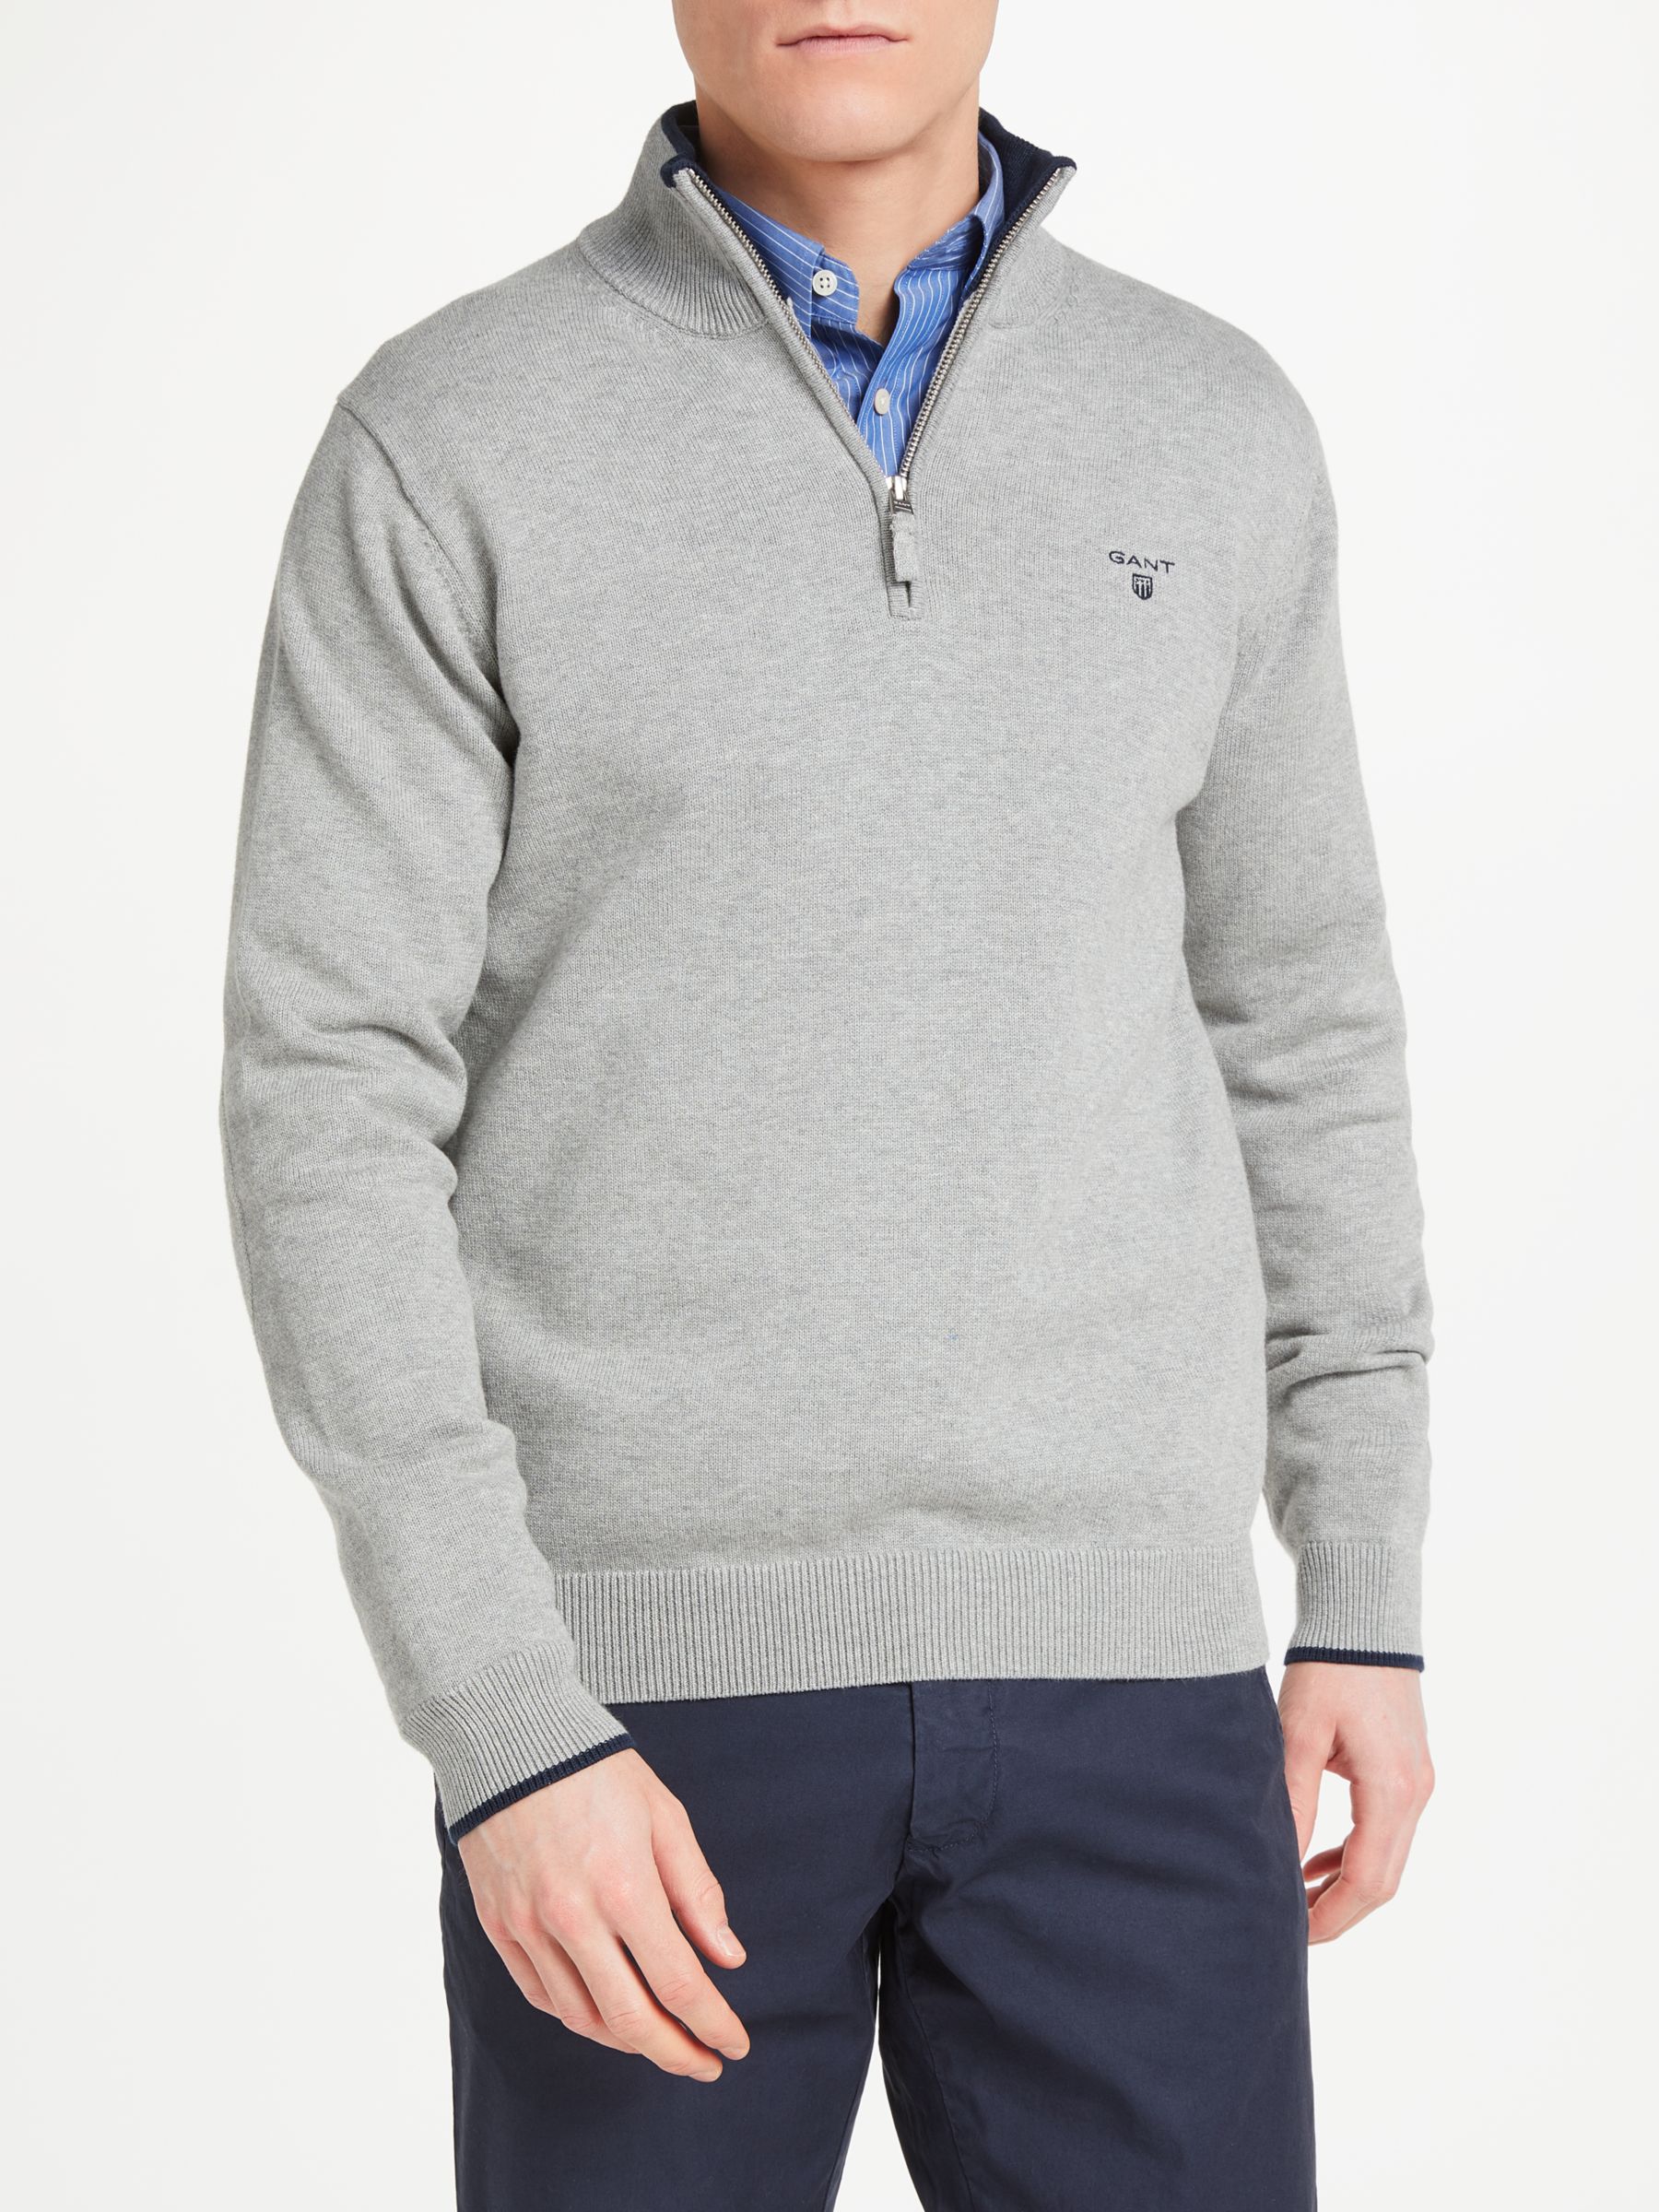 GANT Cotton Contrast Half Zip Sweatshirt, Grey, M